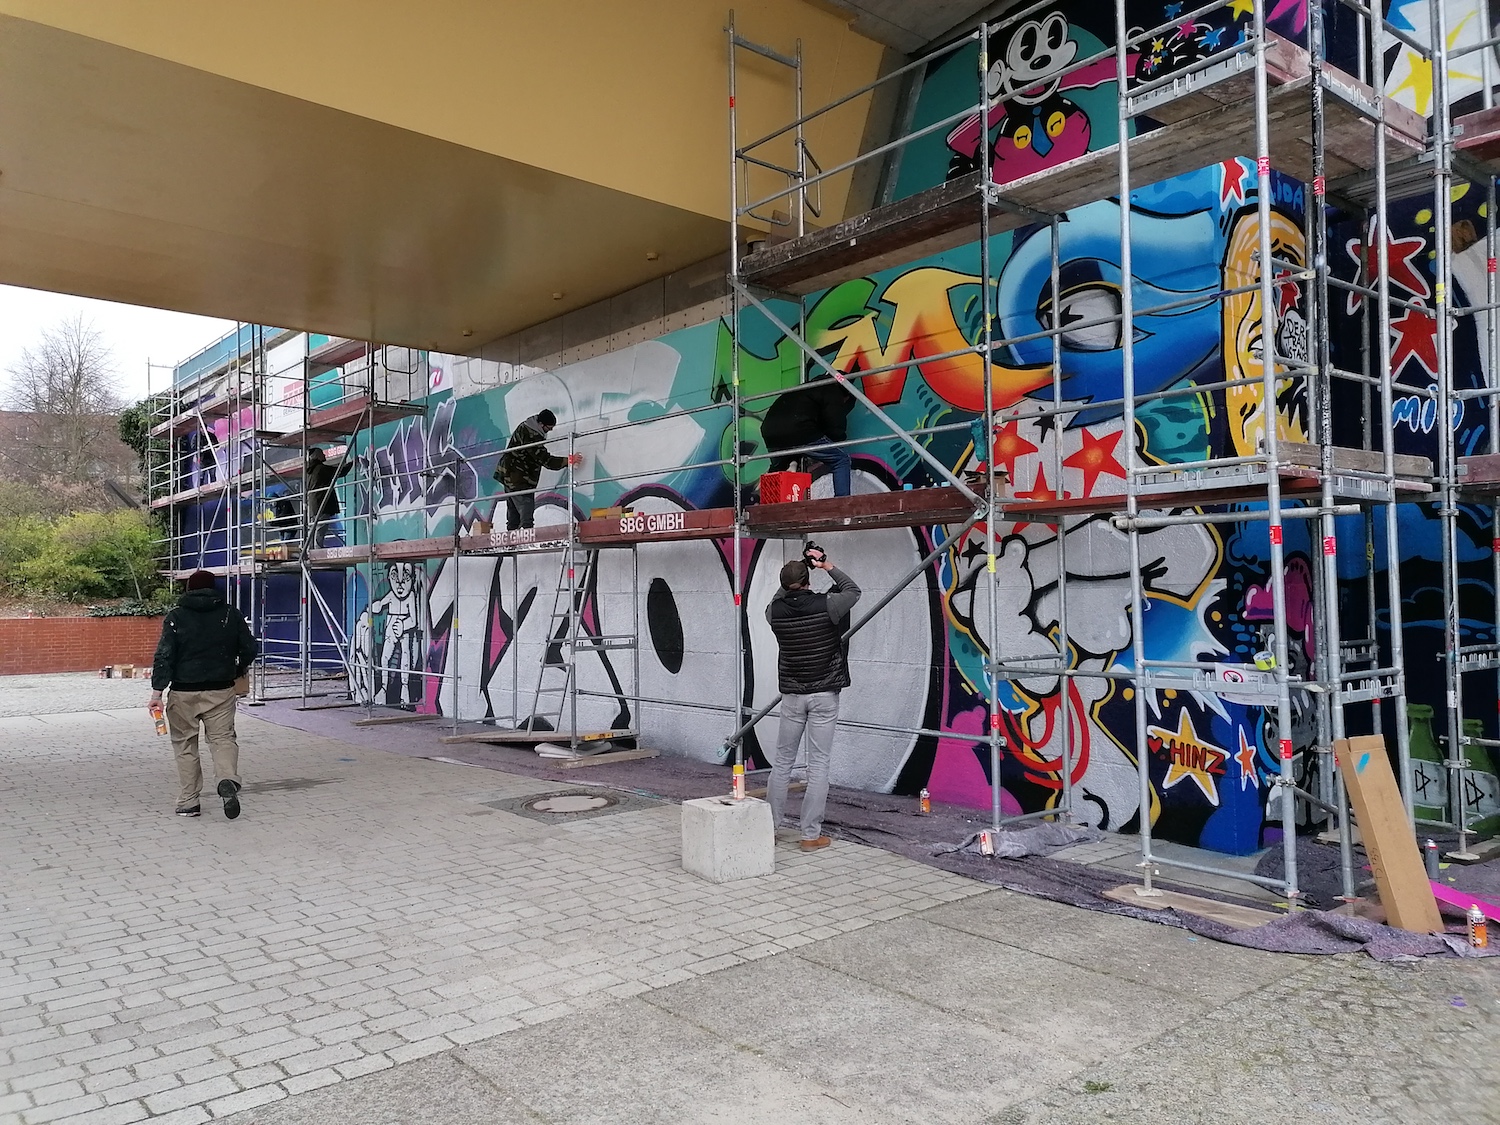 Wand mit Gerüst, auf dem Graffiti-Künstler stehen und sprühen